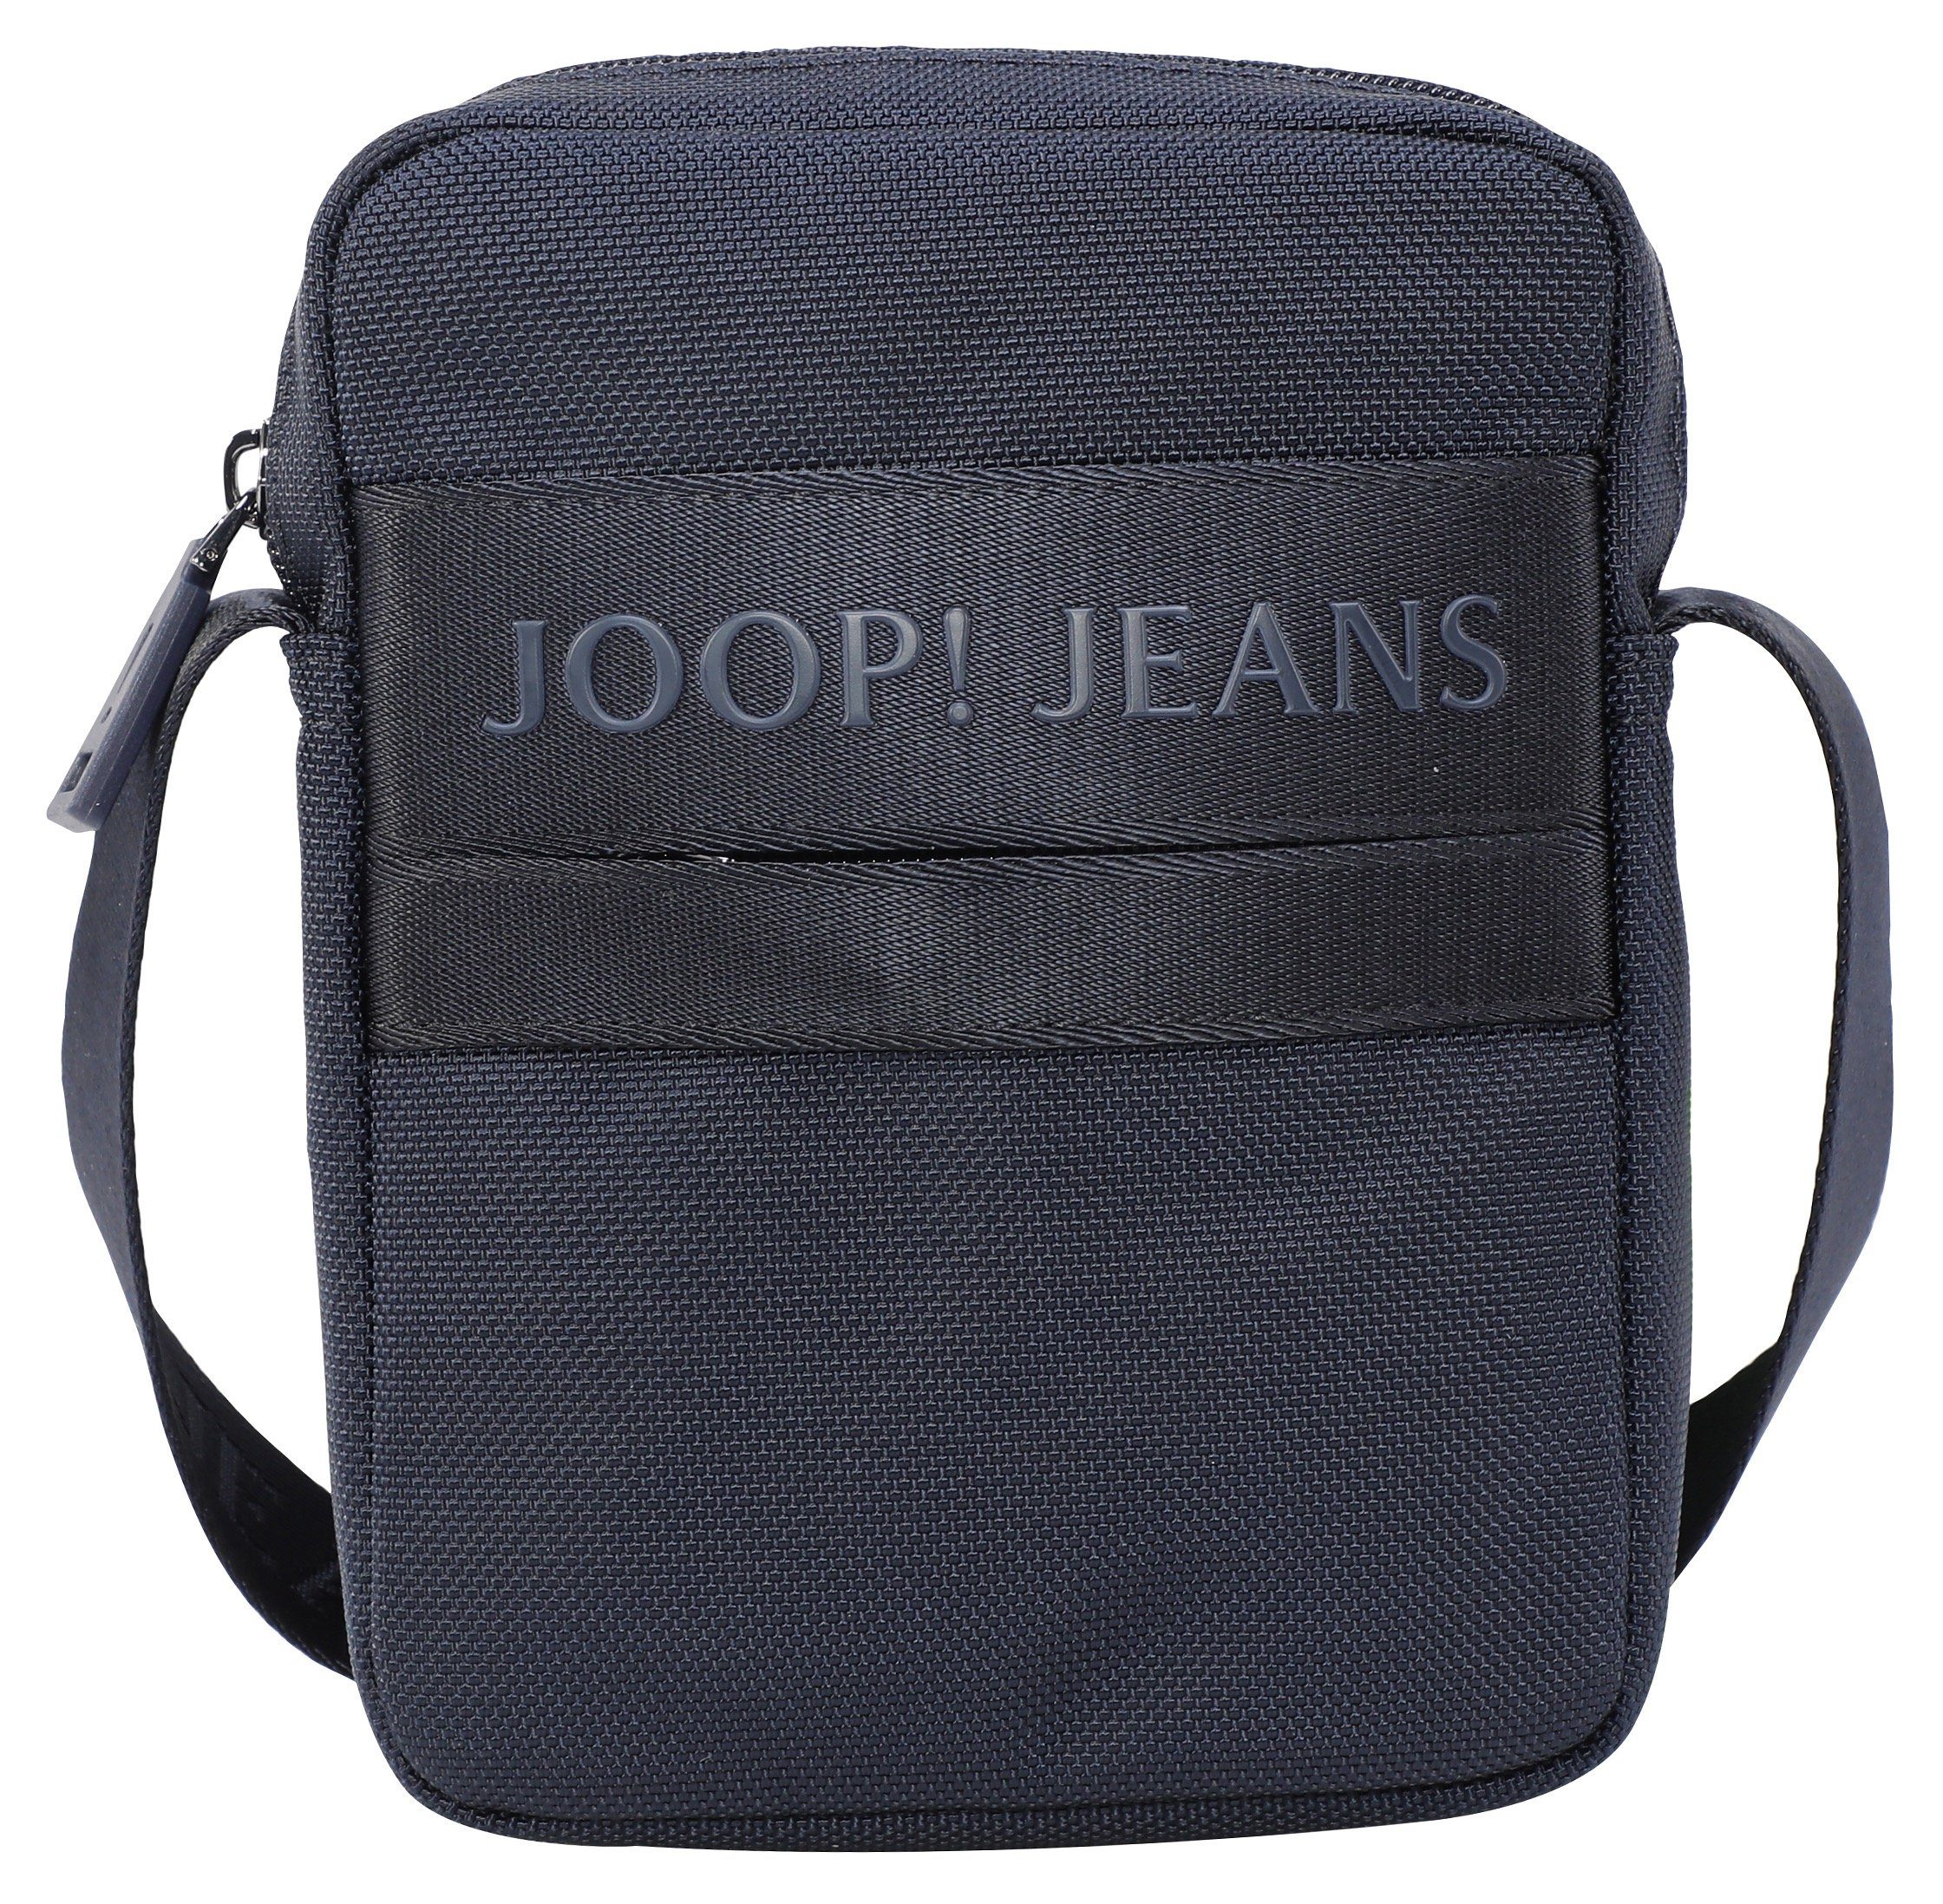 Umhängetasche shoulderbag im Jeans dunkelblau rafael xsvz, Design modica praktischen Joop